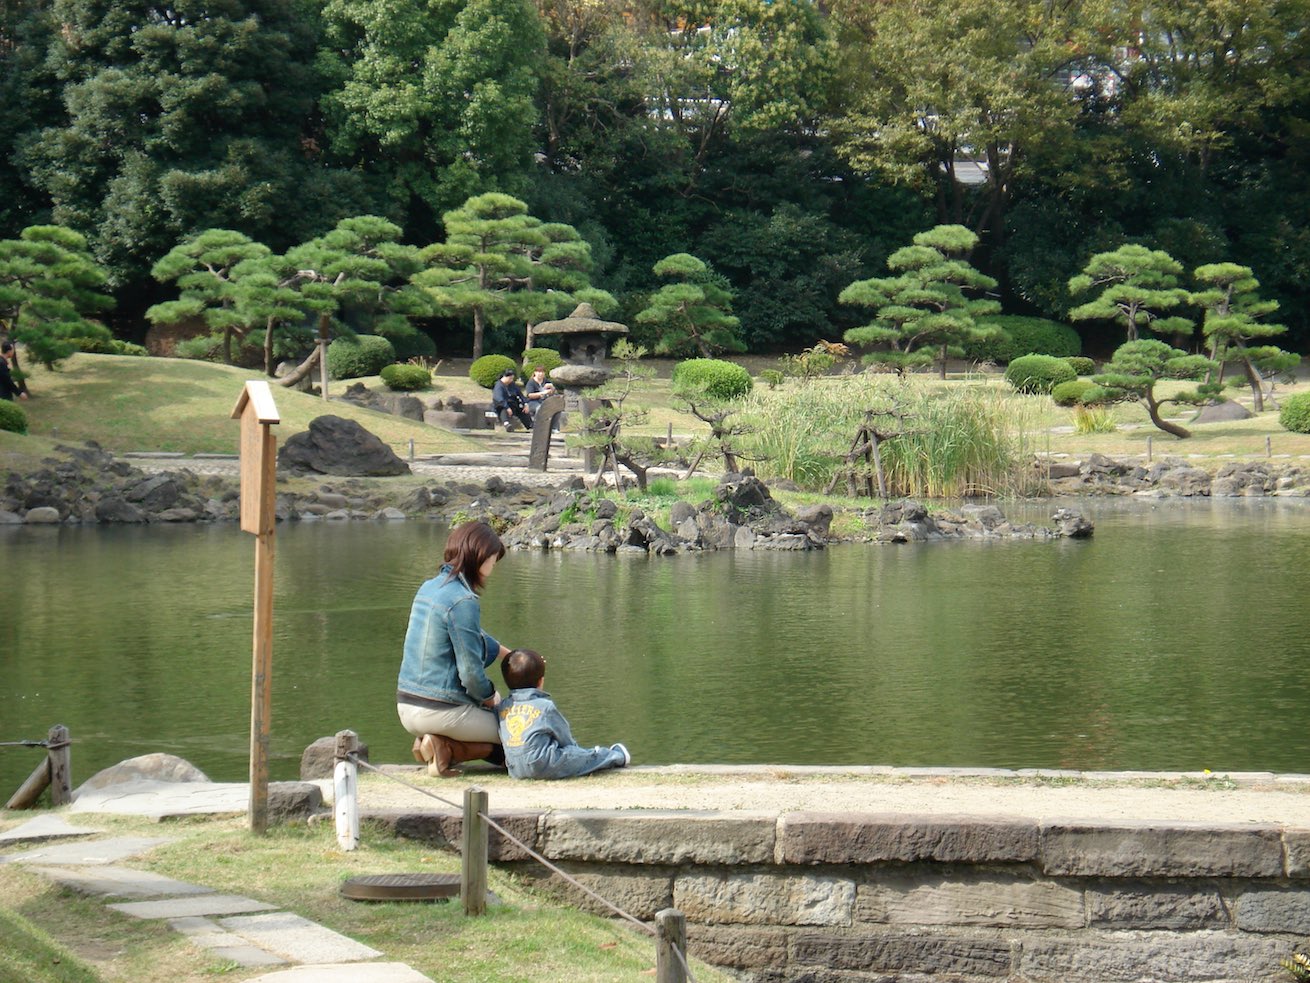 Kyu-Shibarikyu Gardens